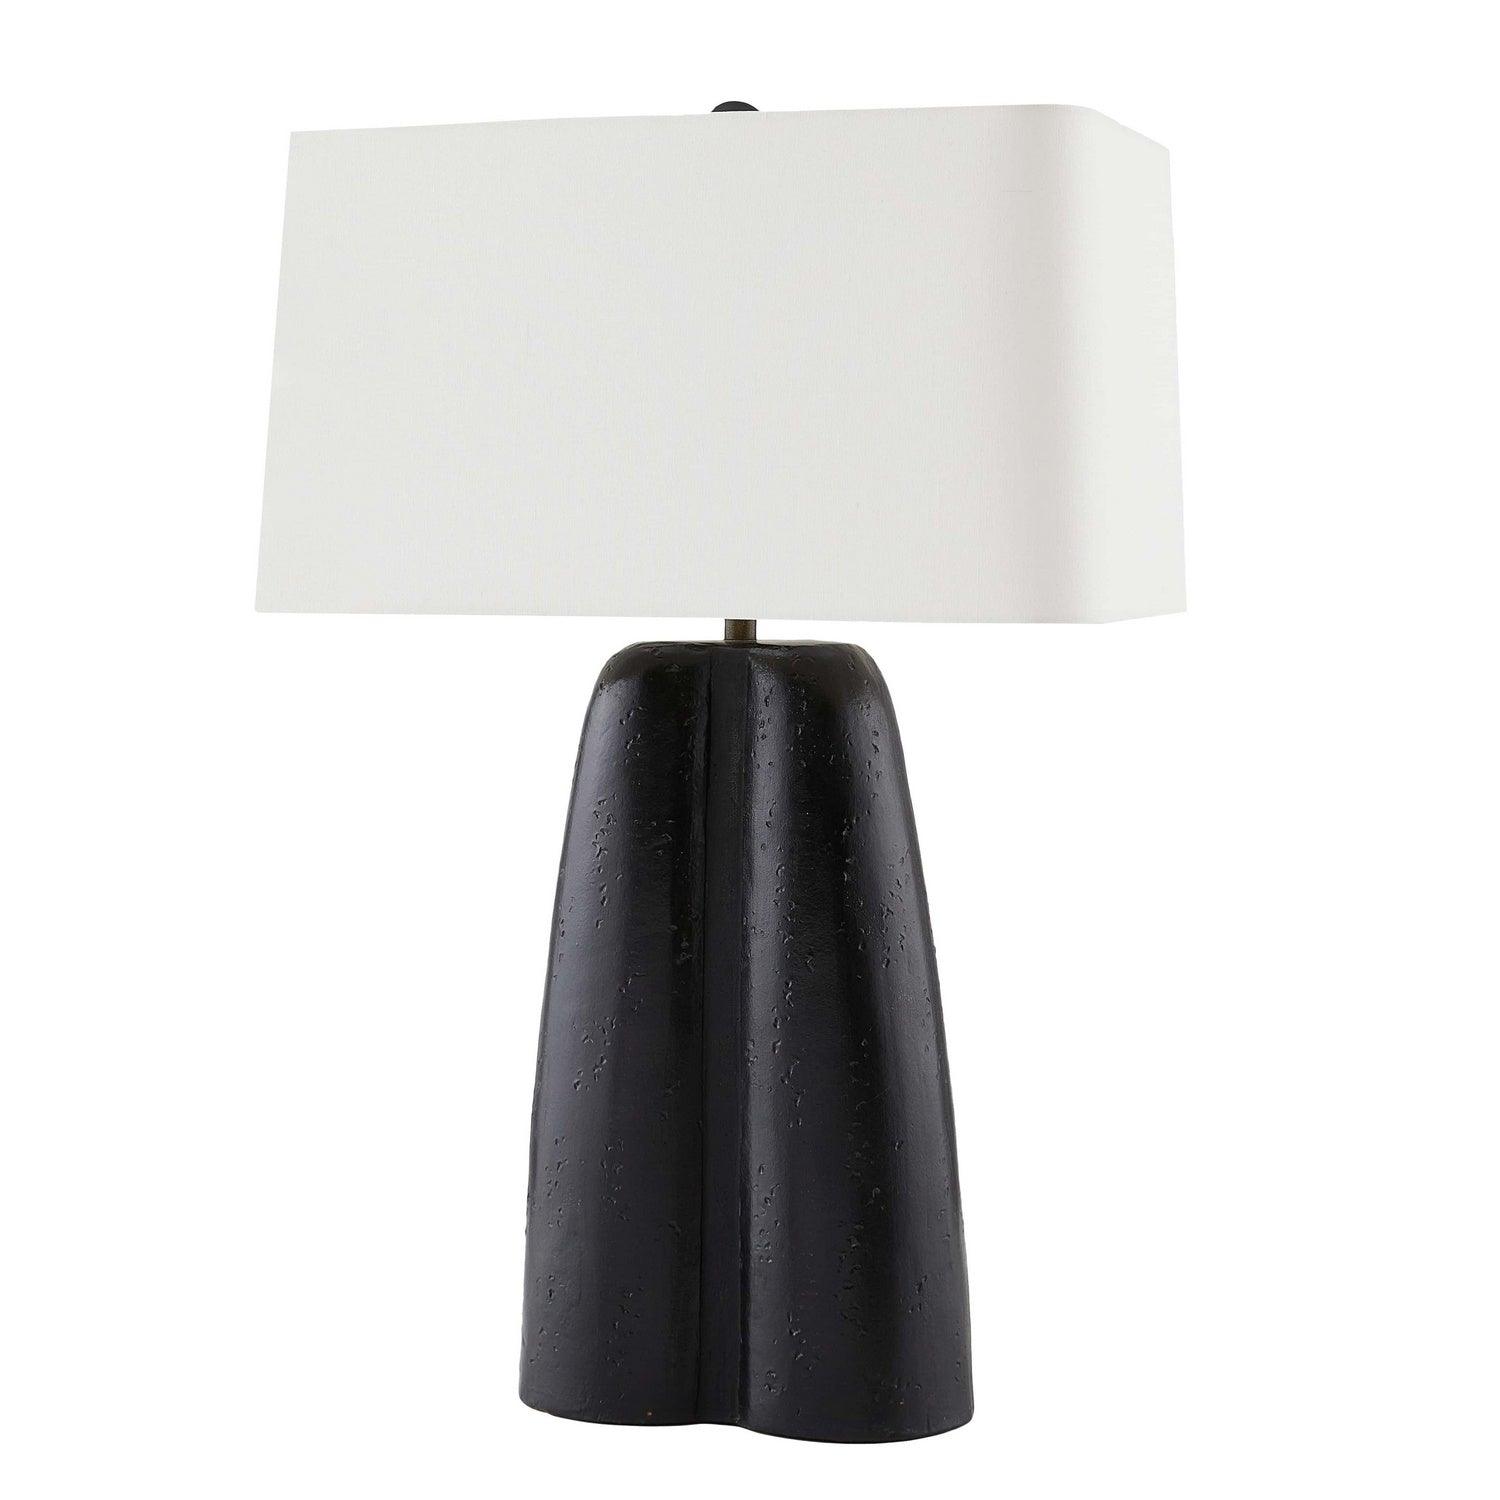 Arteriors - Romer Table Lamp - 45209-681 | Montreal Lighting & Hardware